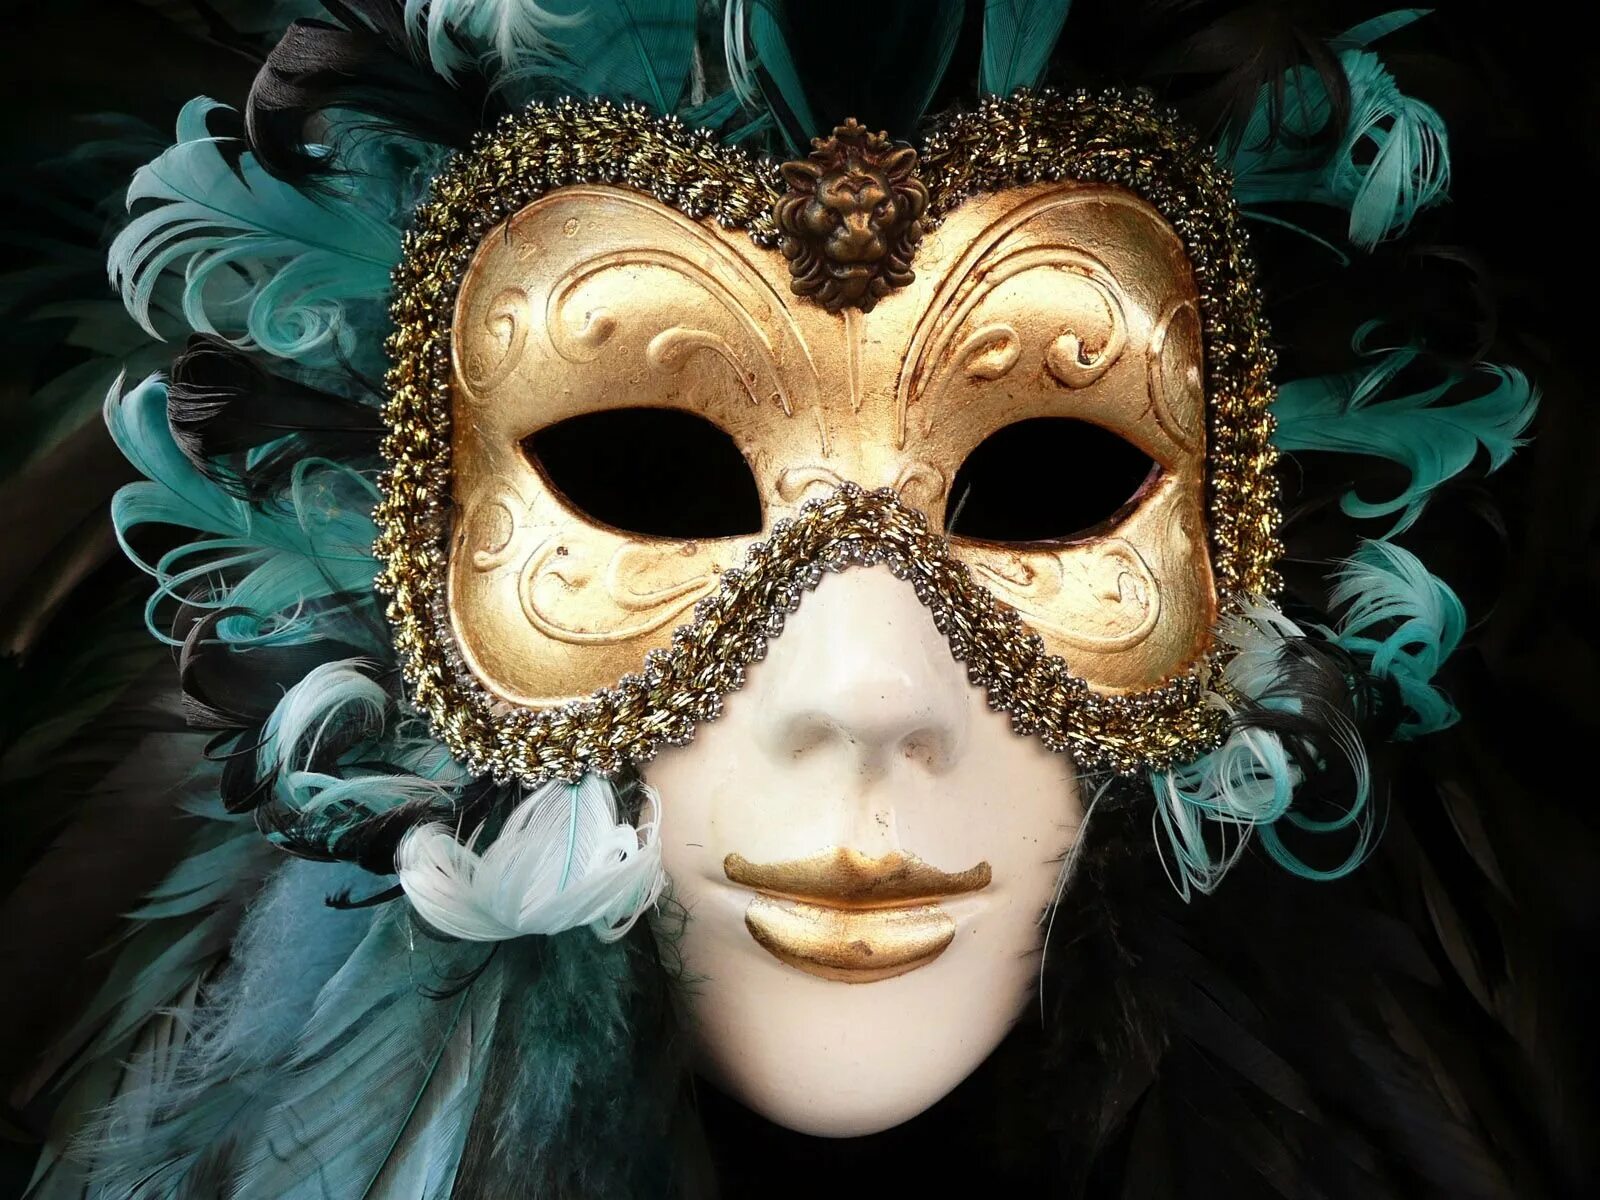 Джузеппе Верди "бал-маскарад". Венецианская маска Вольтер. Венецианская маска Арлекино. Венецианский карнавал Коломбина.